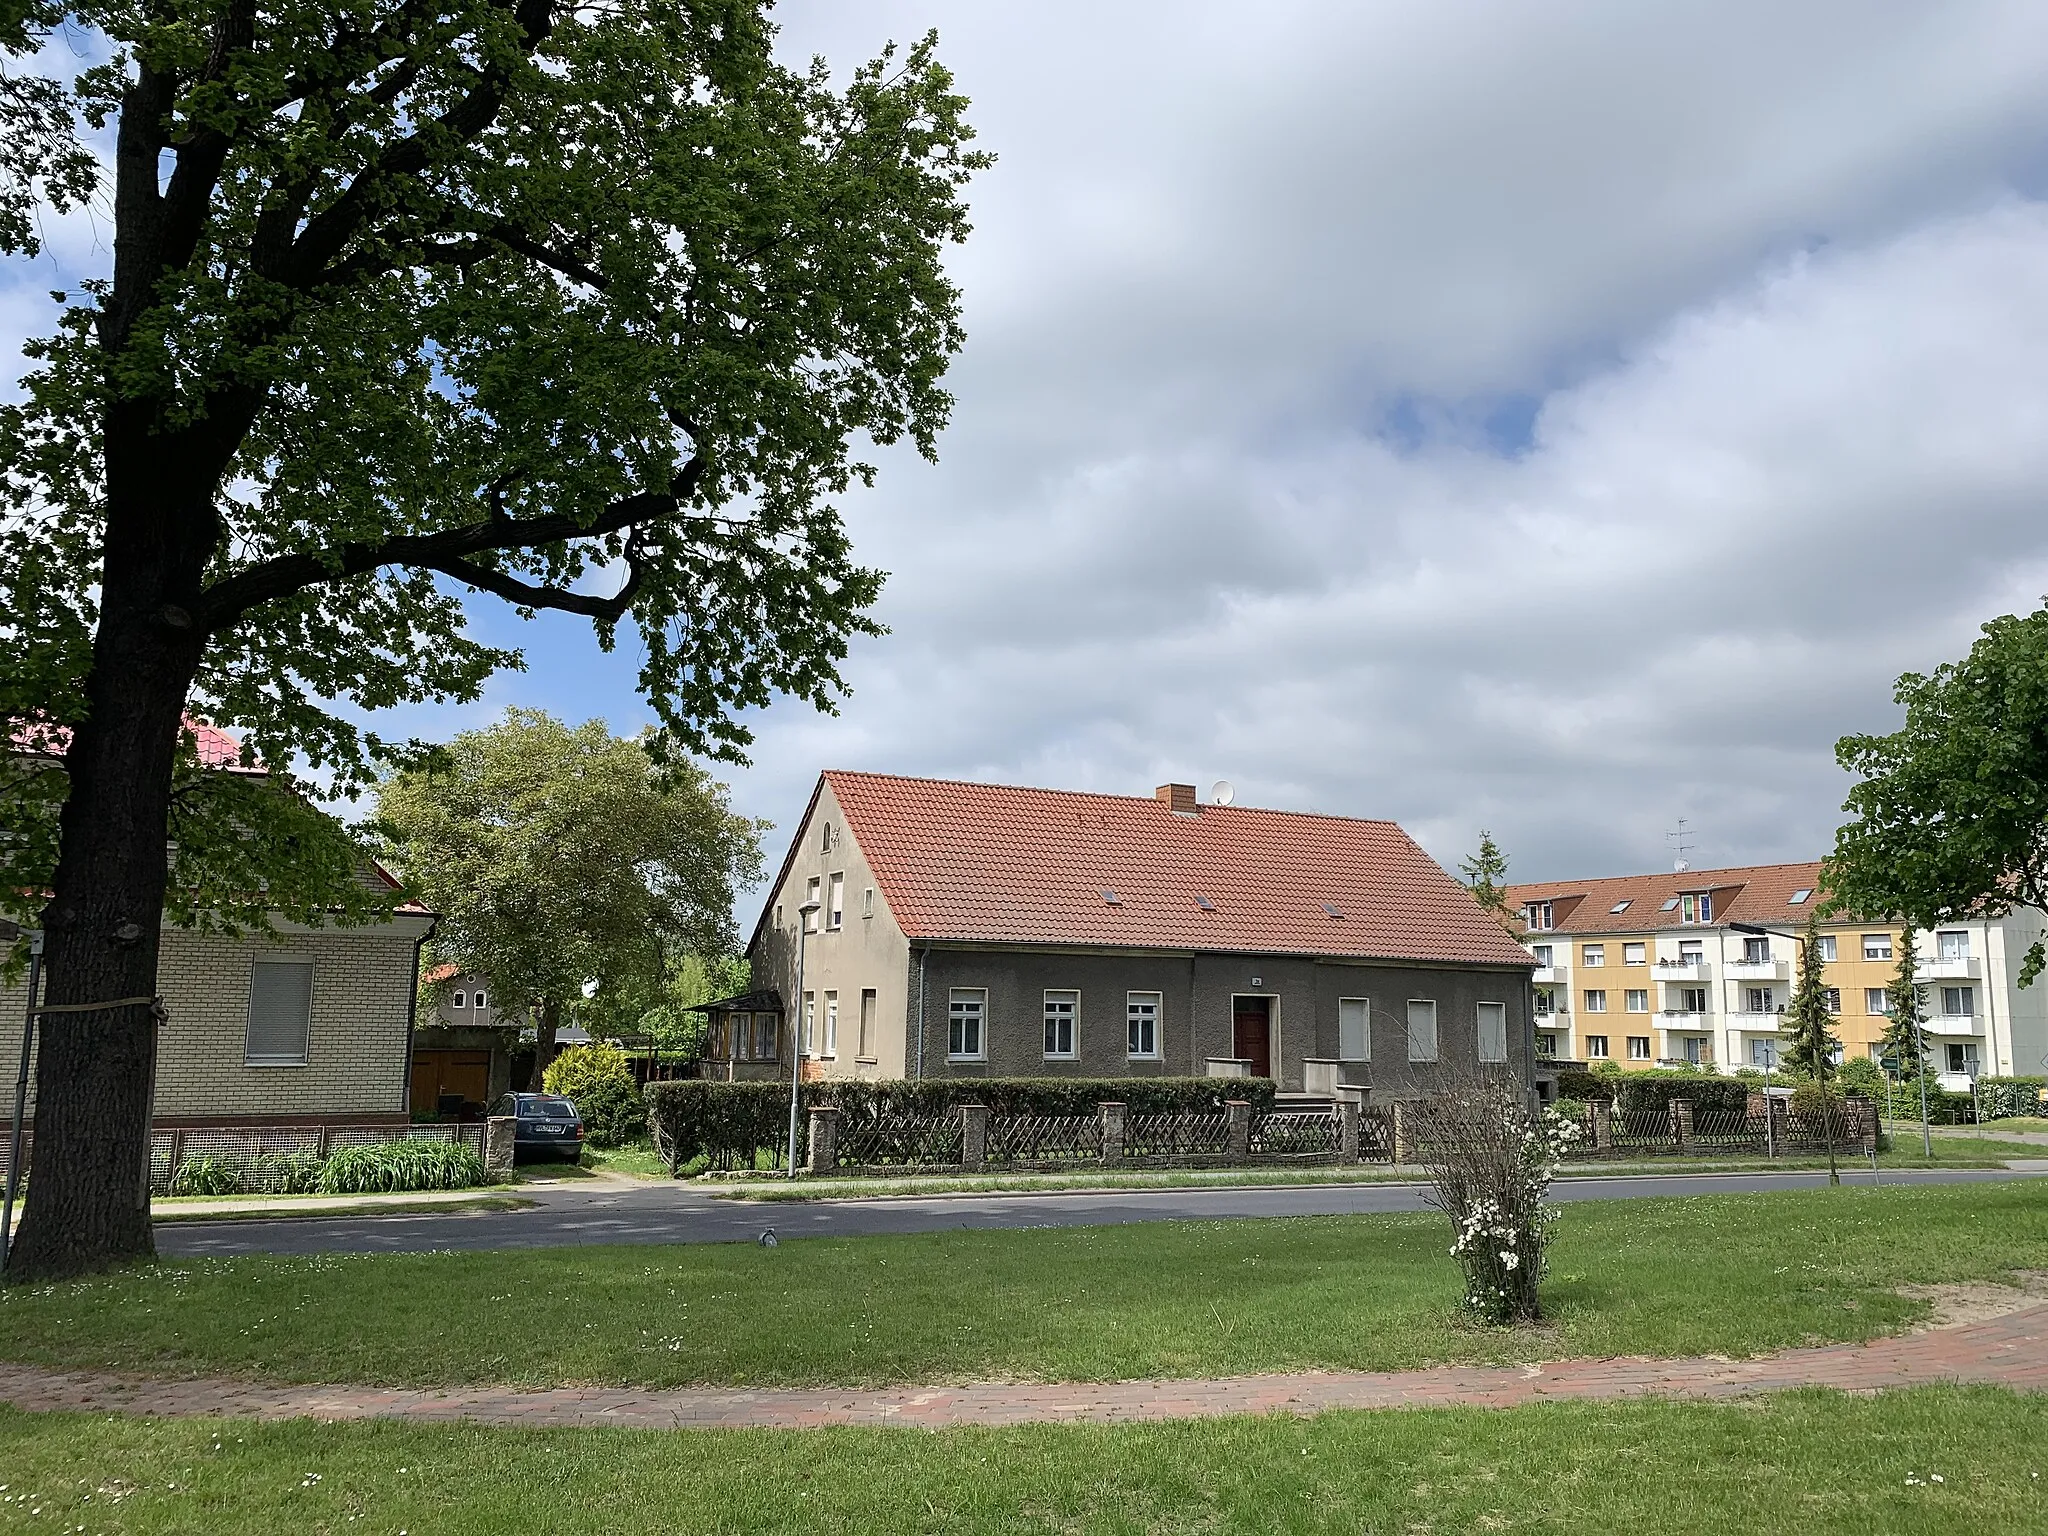 Photo showing: Bredow, Ortsteil der Gemeinde Brieselang in Brandenburg